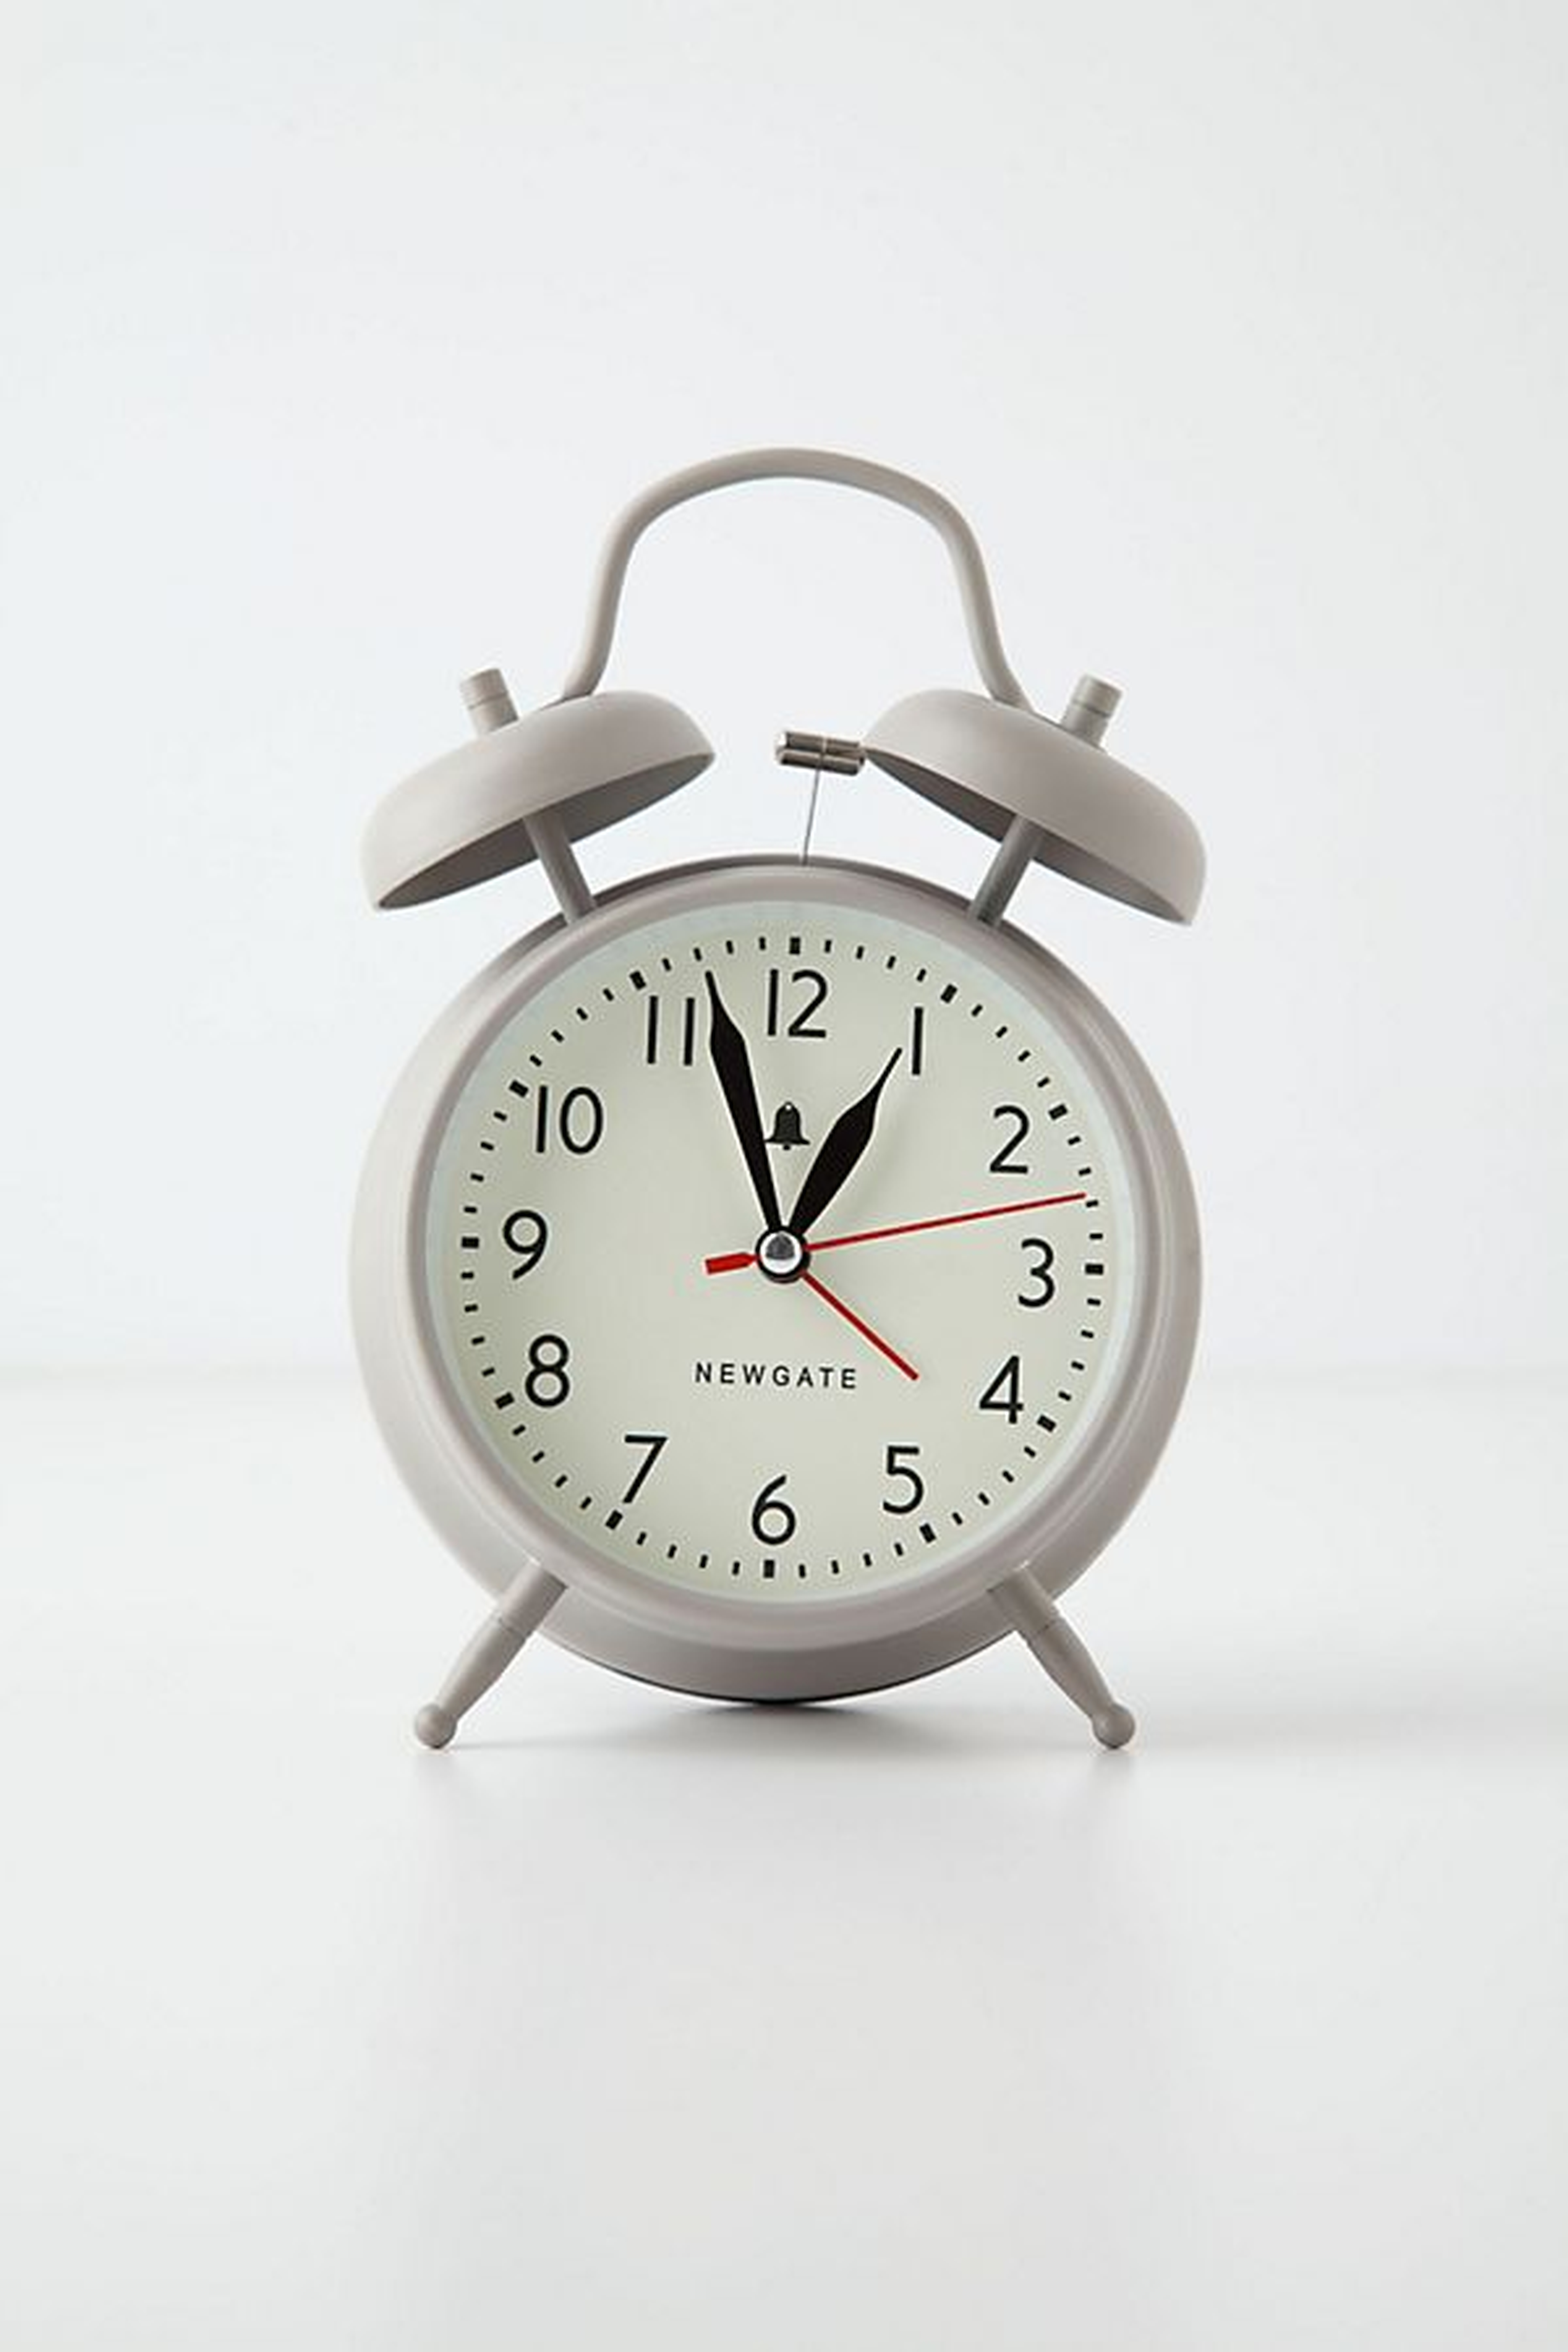 Covent Alarm Clock - Anthropologie